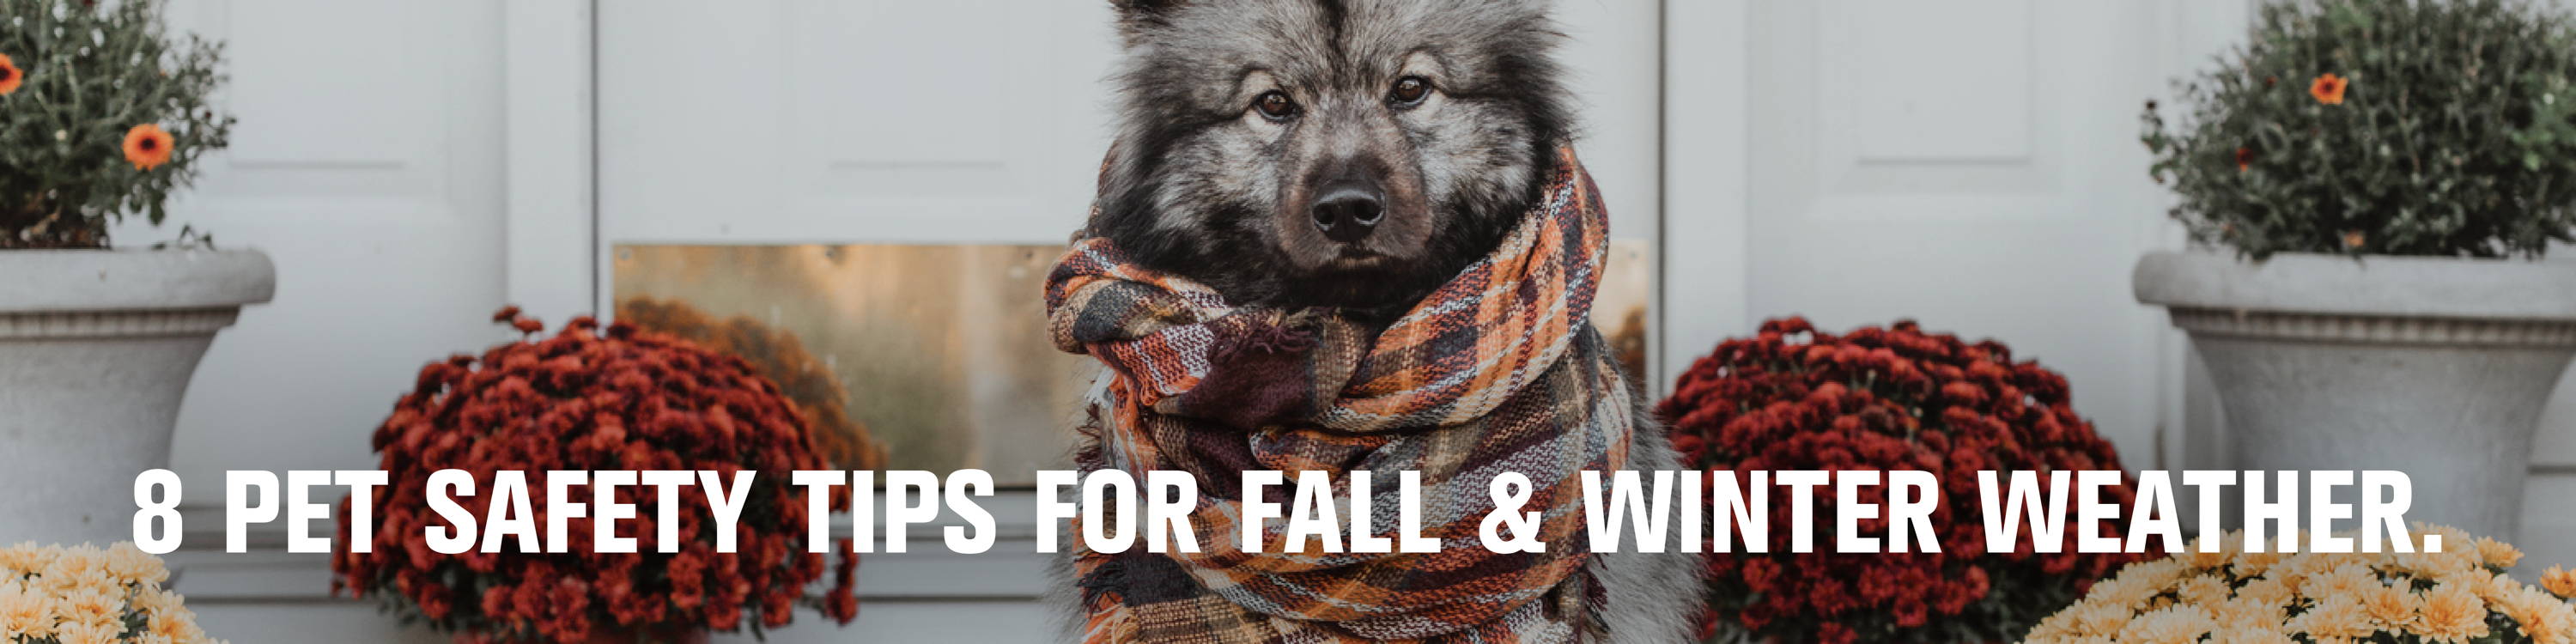 一只毛茸茸的狗坐在门廊上，戴着围巾和妈妈. 秋冬天气的8个宠物安全提示.